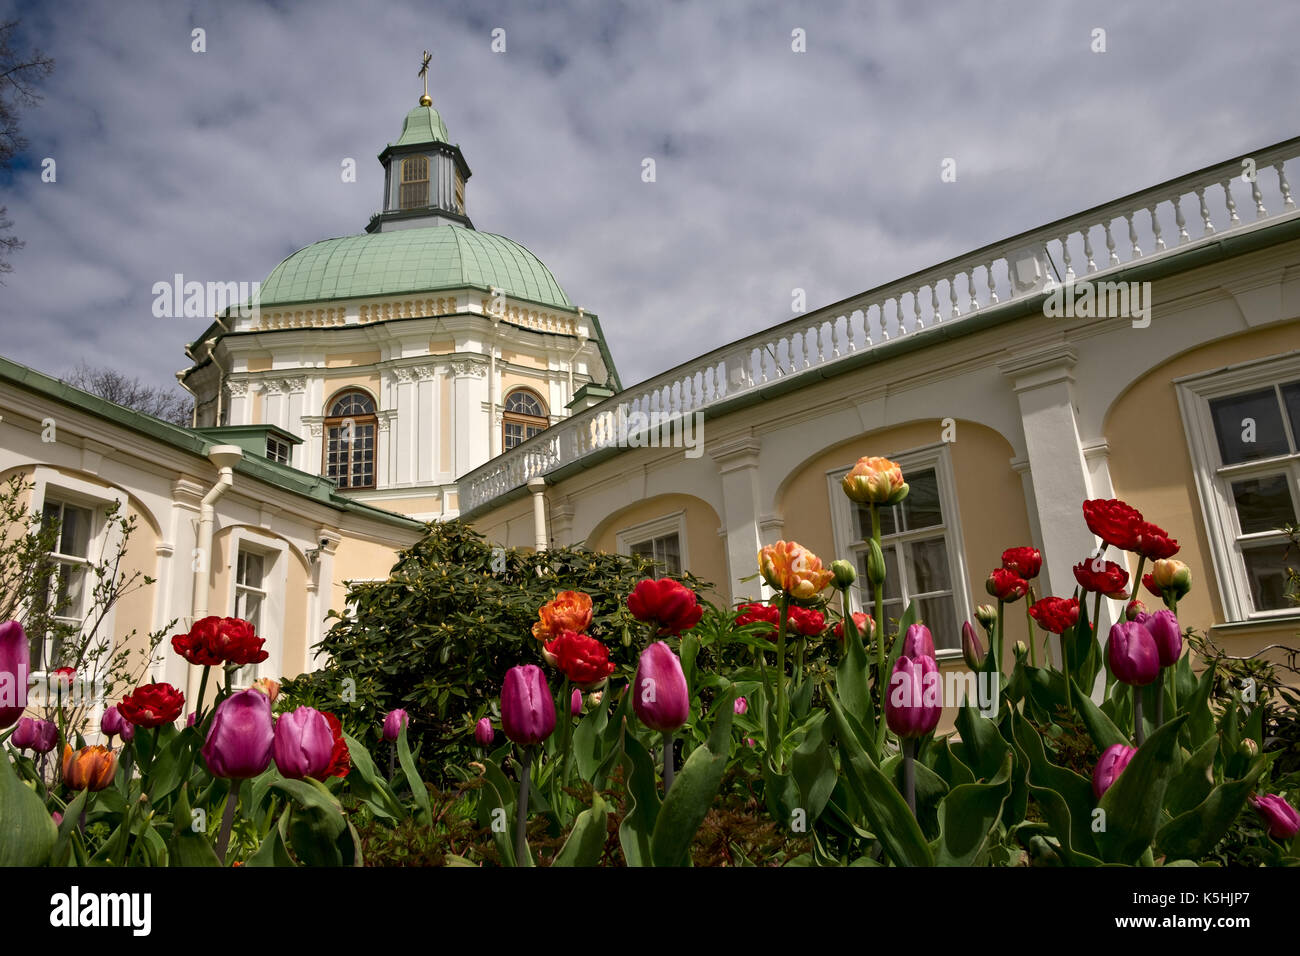 Lomonosov, Russia - 22 maggio: grand il Palazzo Mensikov in lomonosov, Russia il 22 maggio 2017 Foto Stock